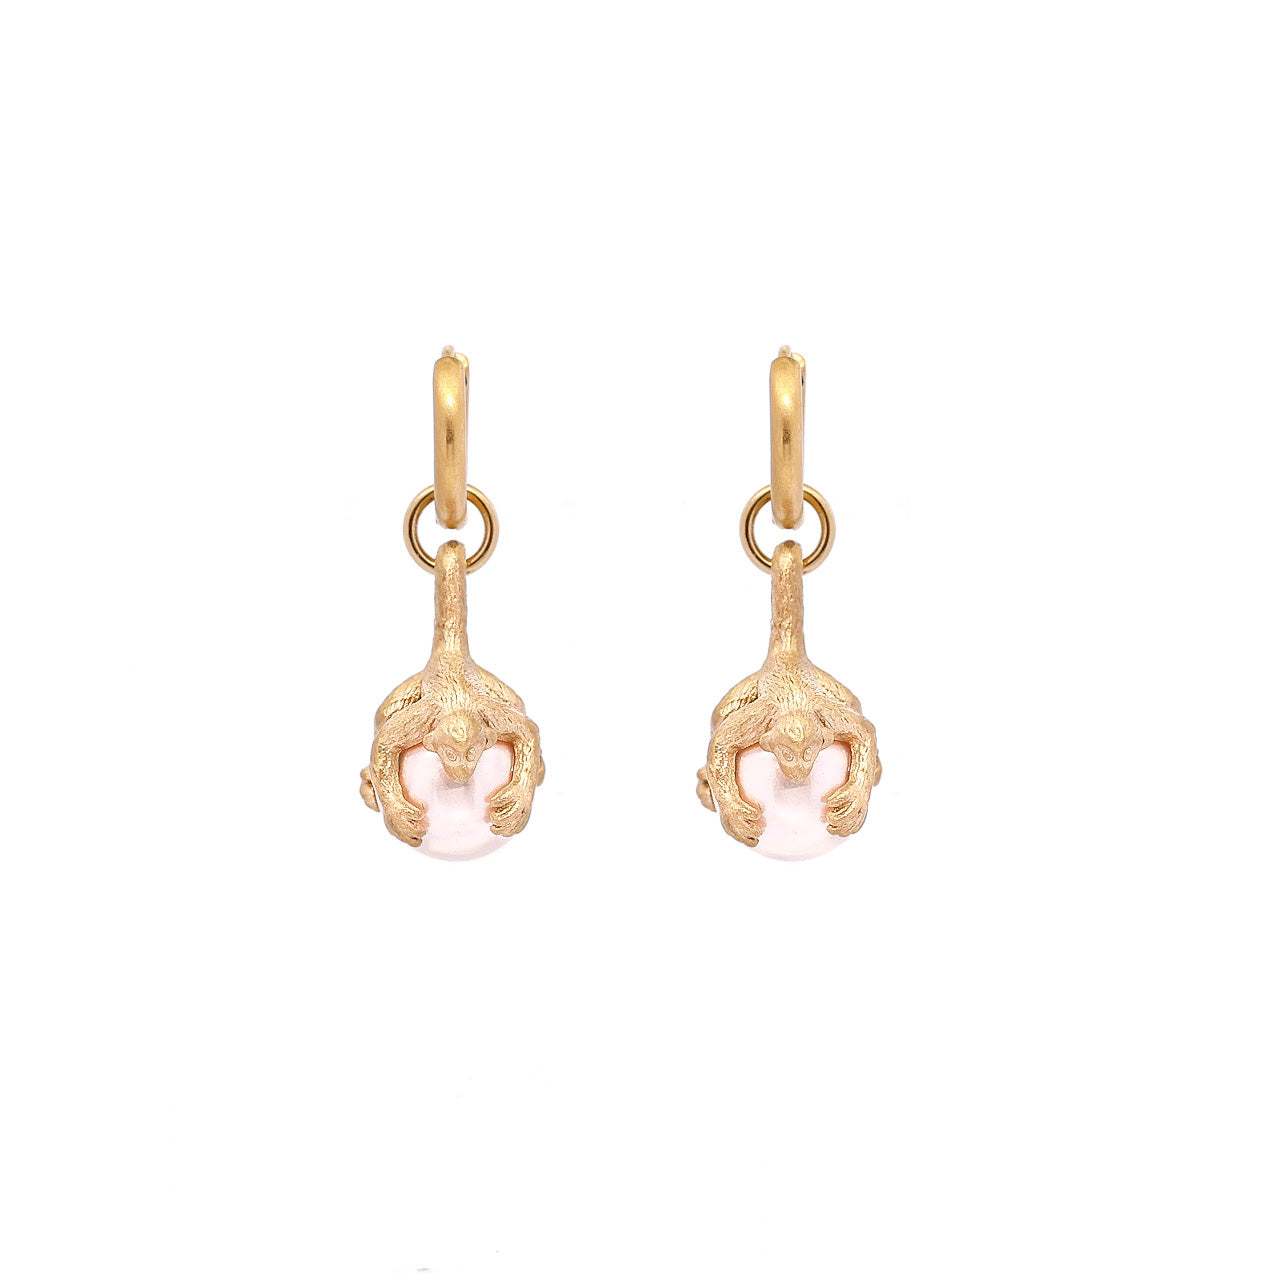 Monkey earrings, Pink pearl